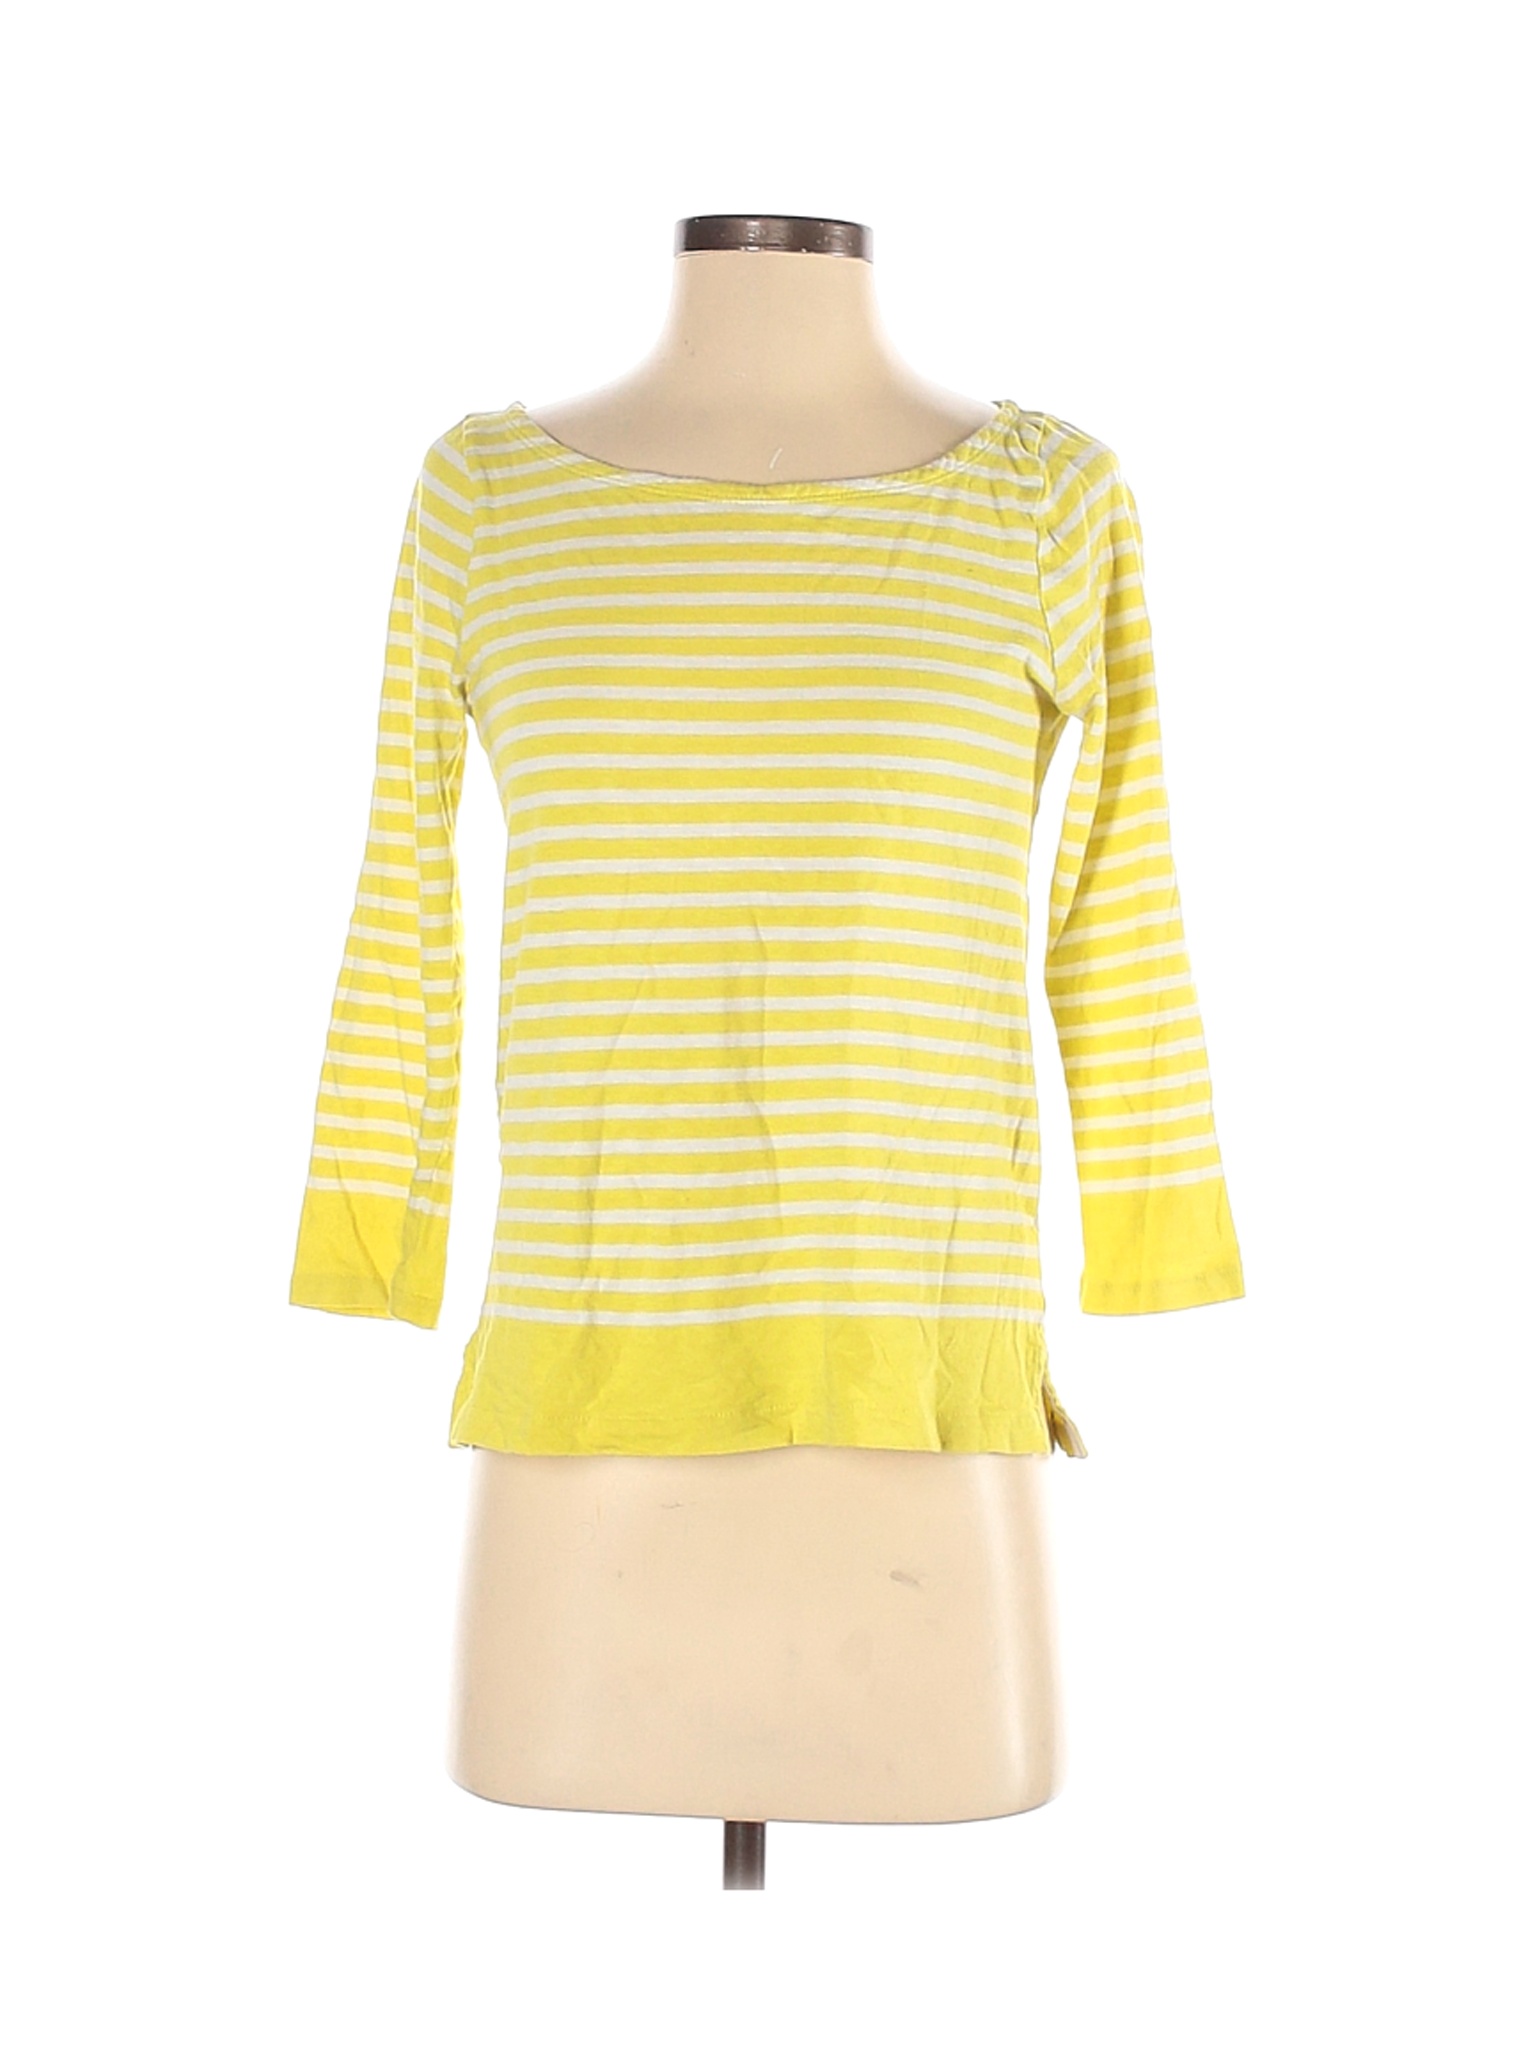 J.Crew Women Yellow 3/4 Sleeve T-Shirt S | eBay